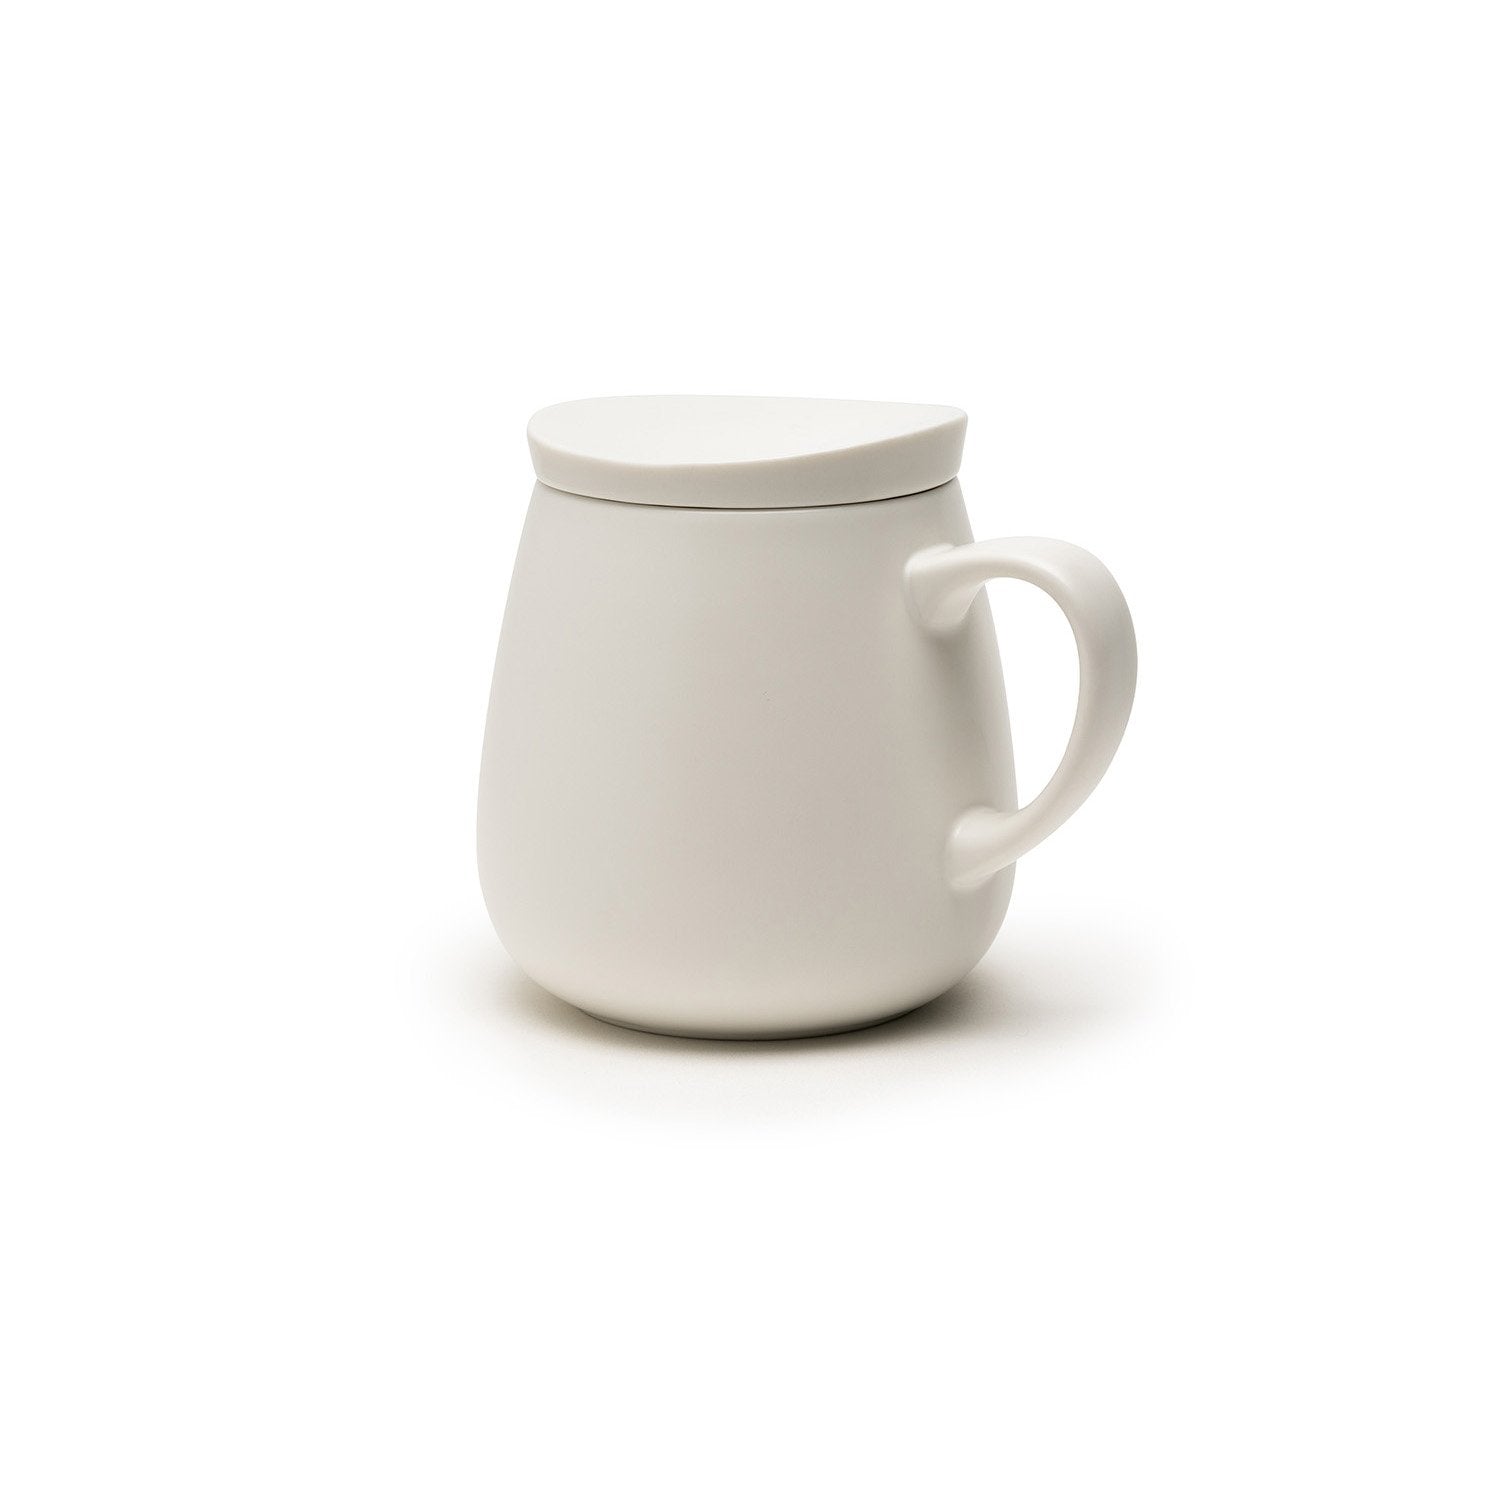 Large white mug with lid